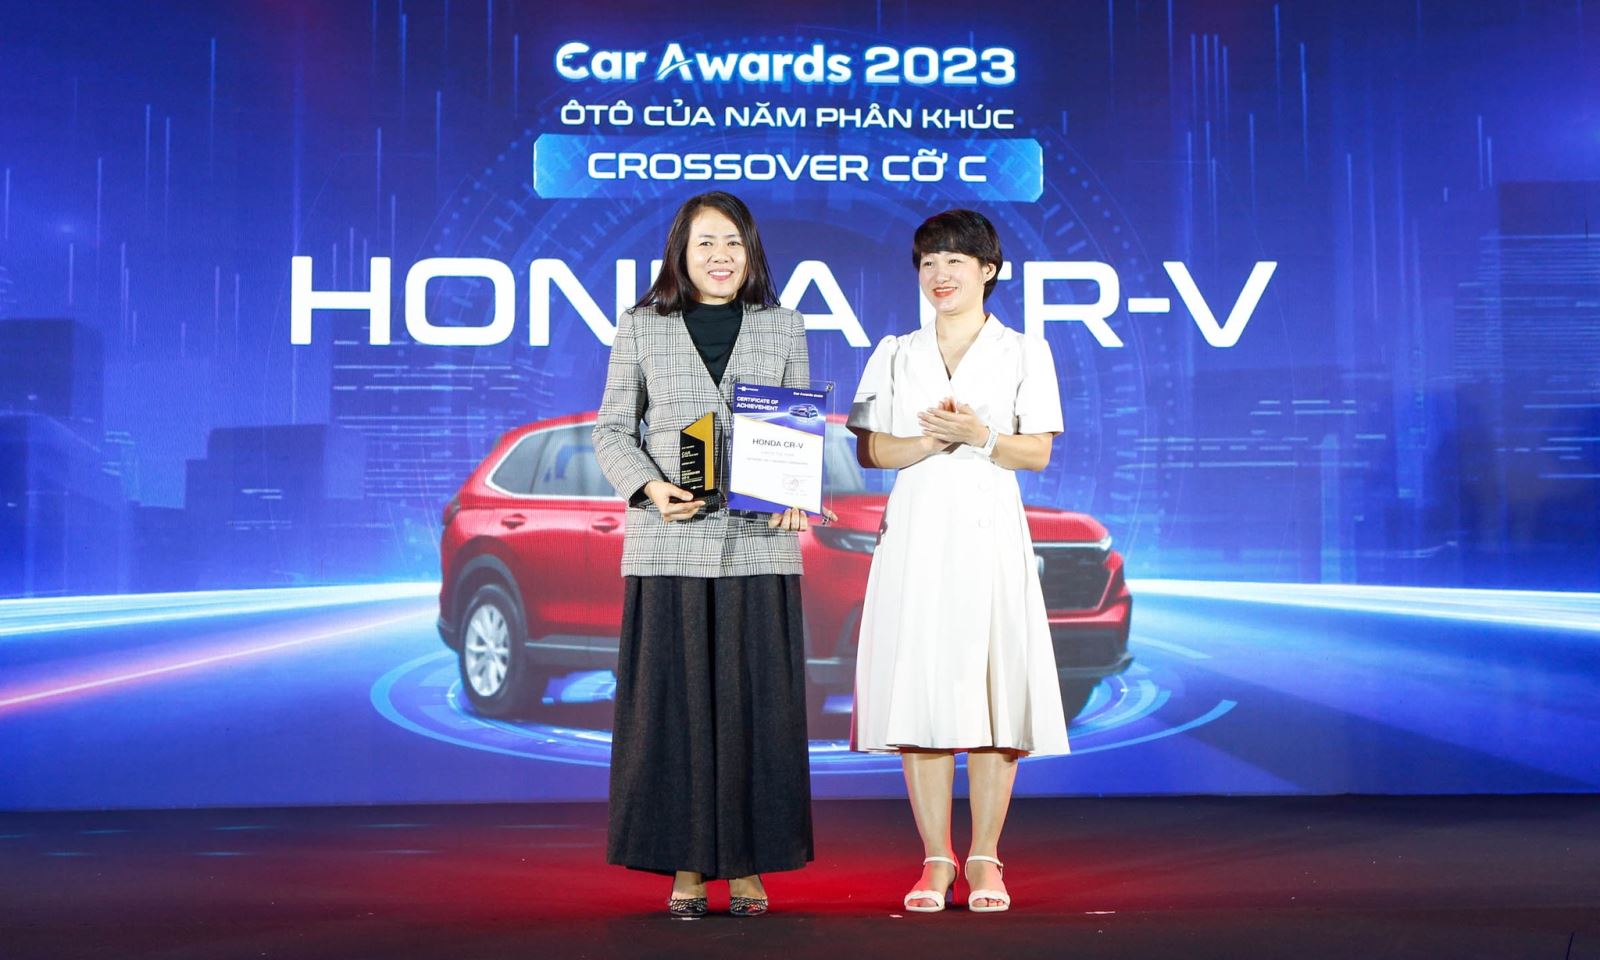 Honda CR-V chiến thắng hạng mục Ô tô của năm 2023 tại Car Awards 2023 do VnExpress tổ chức